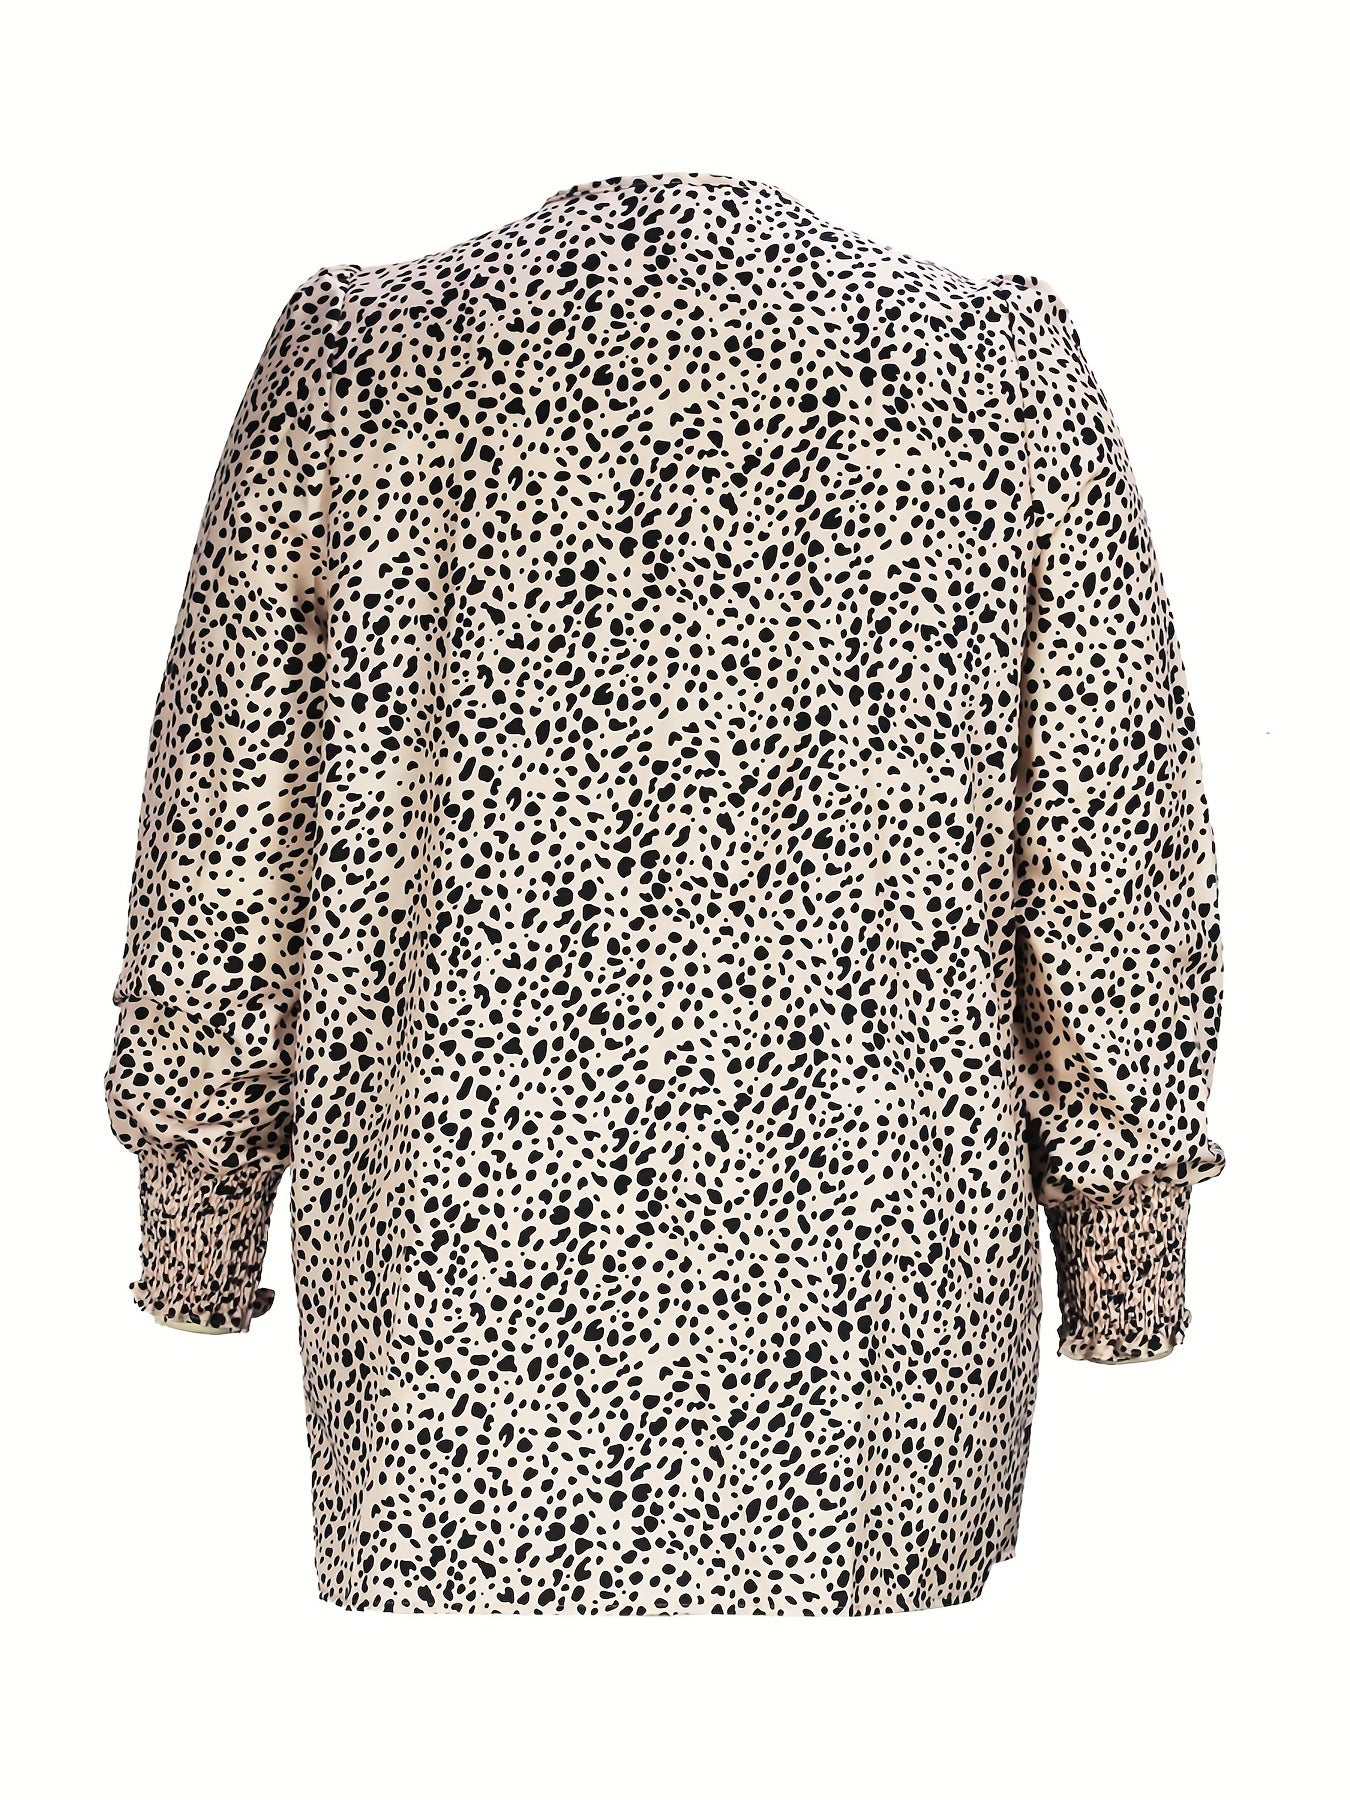 BamBam Plus Size Women French Leopard Print Cardigan Jacket - BamBam